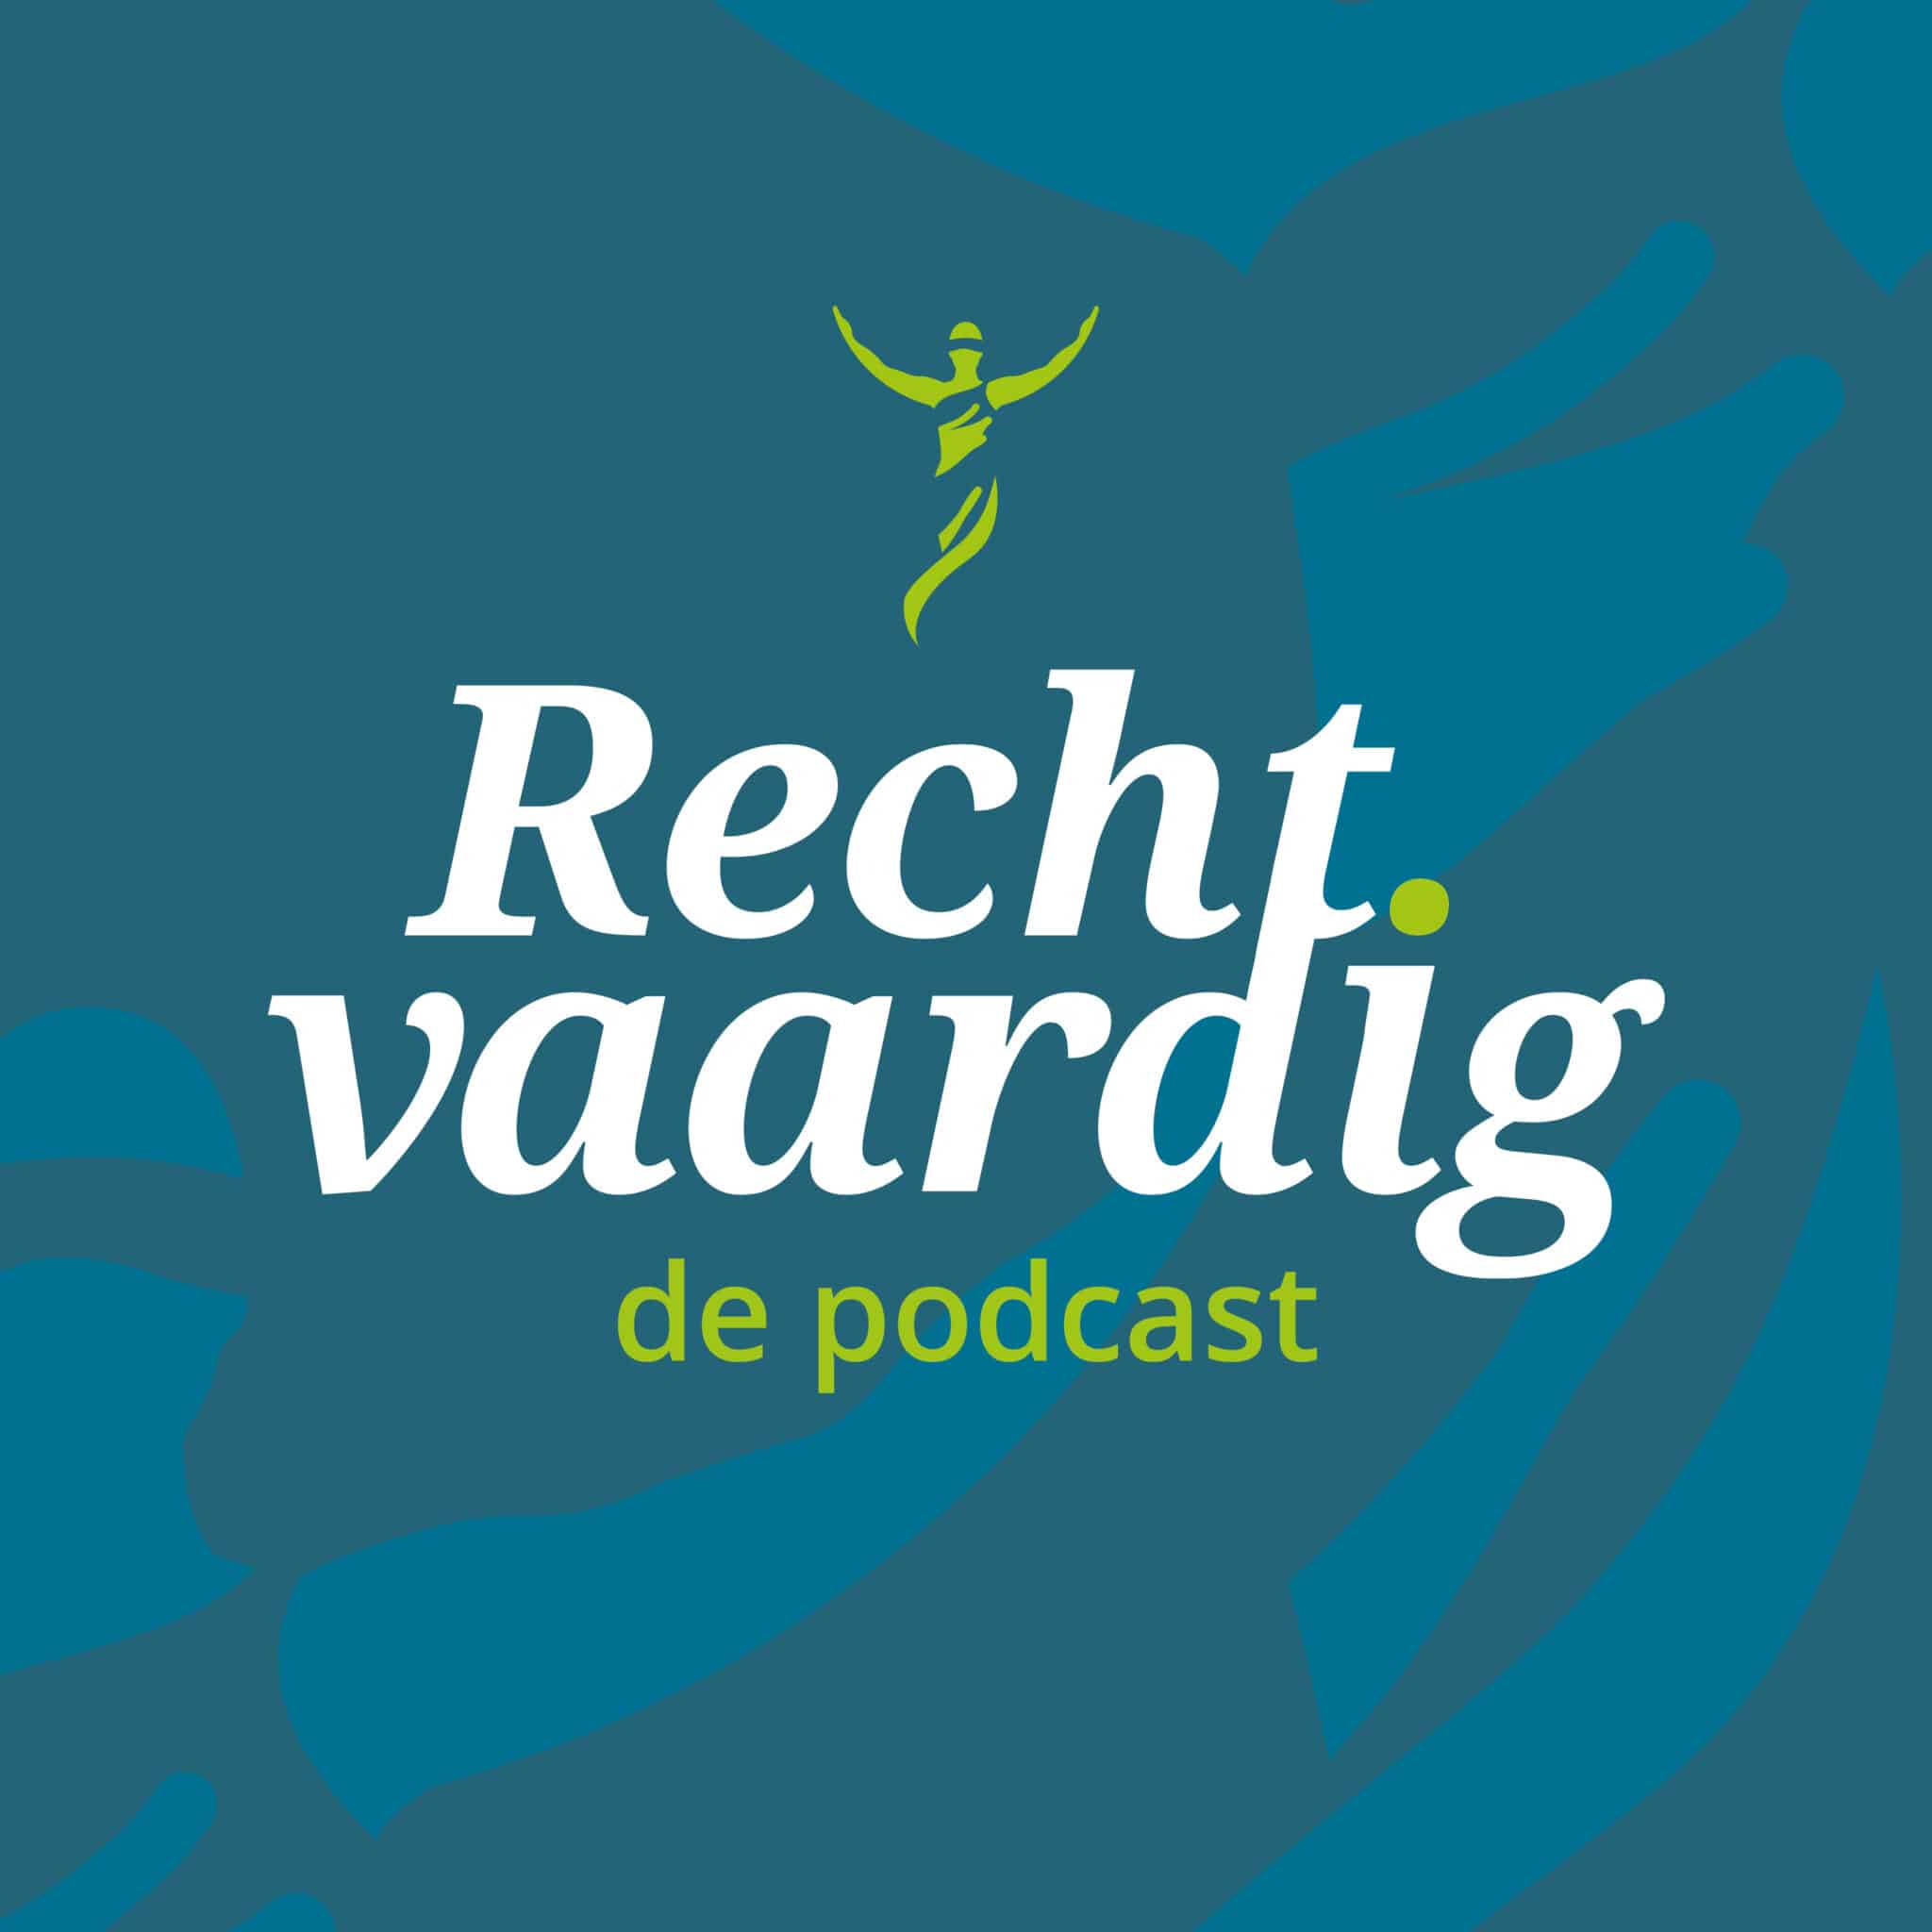 'Podcast medische aspecten in de asielprocedure